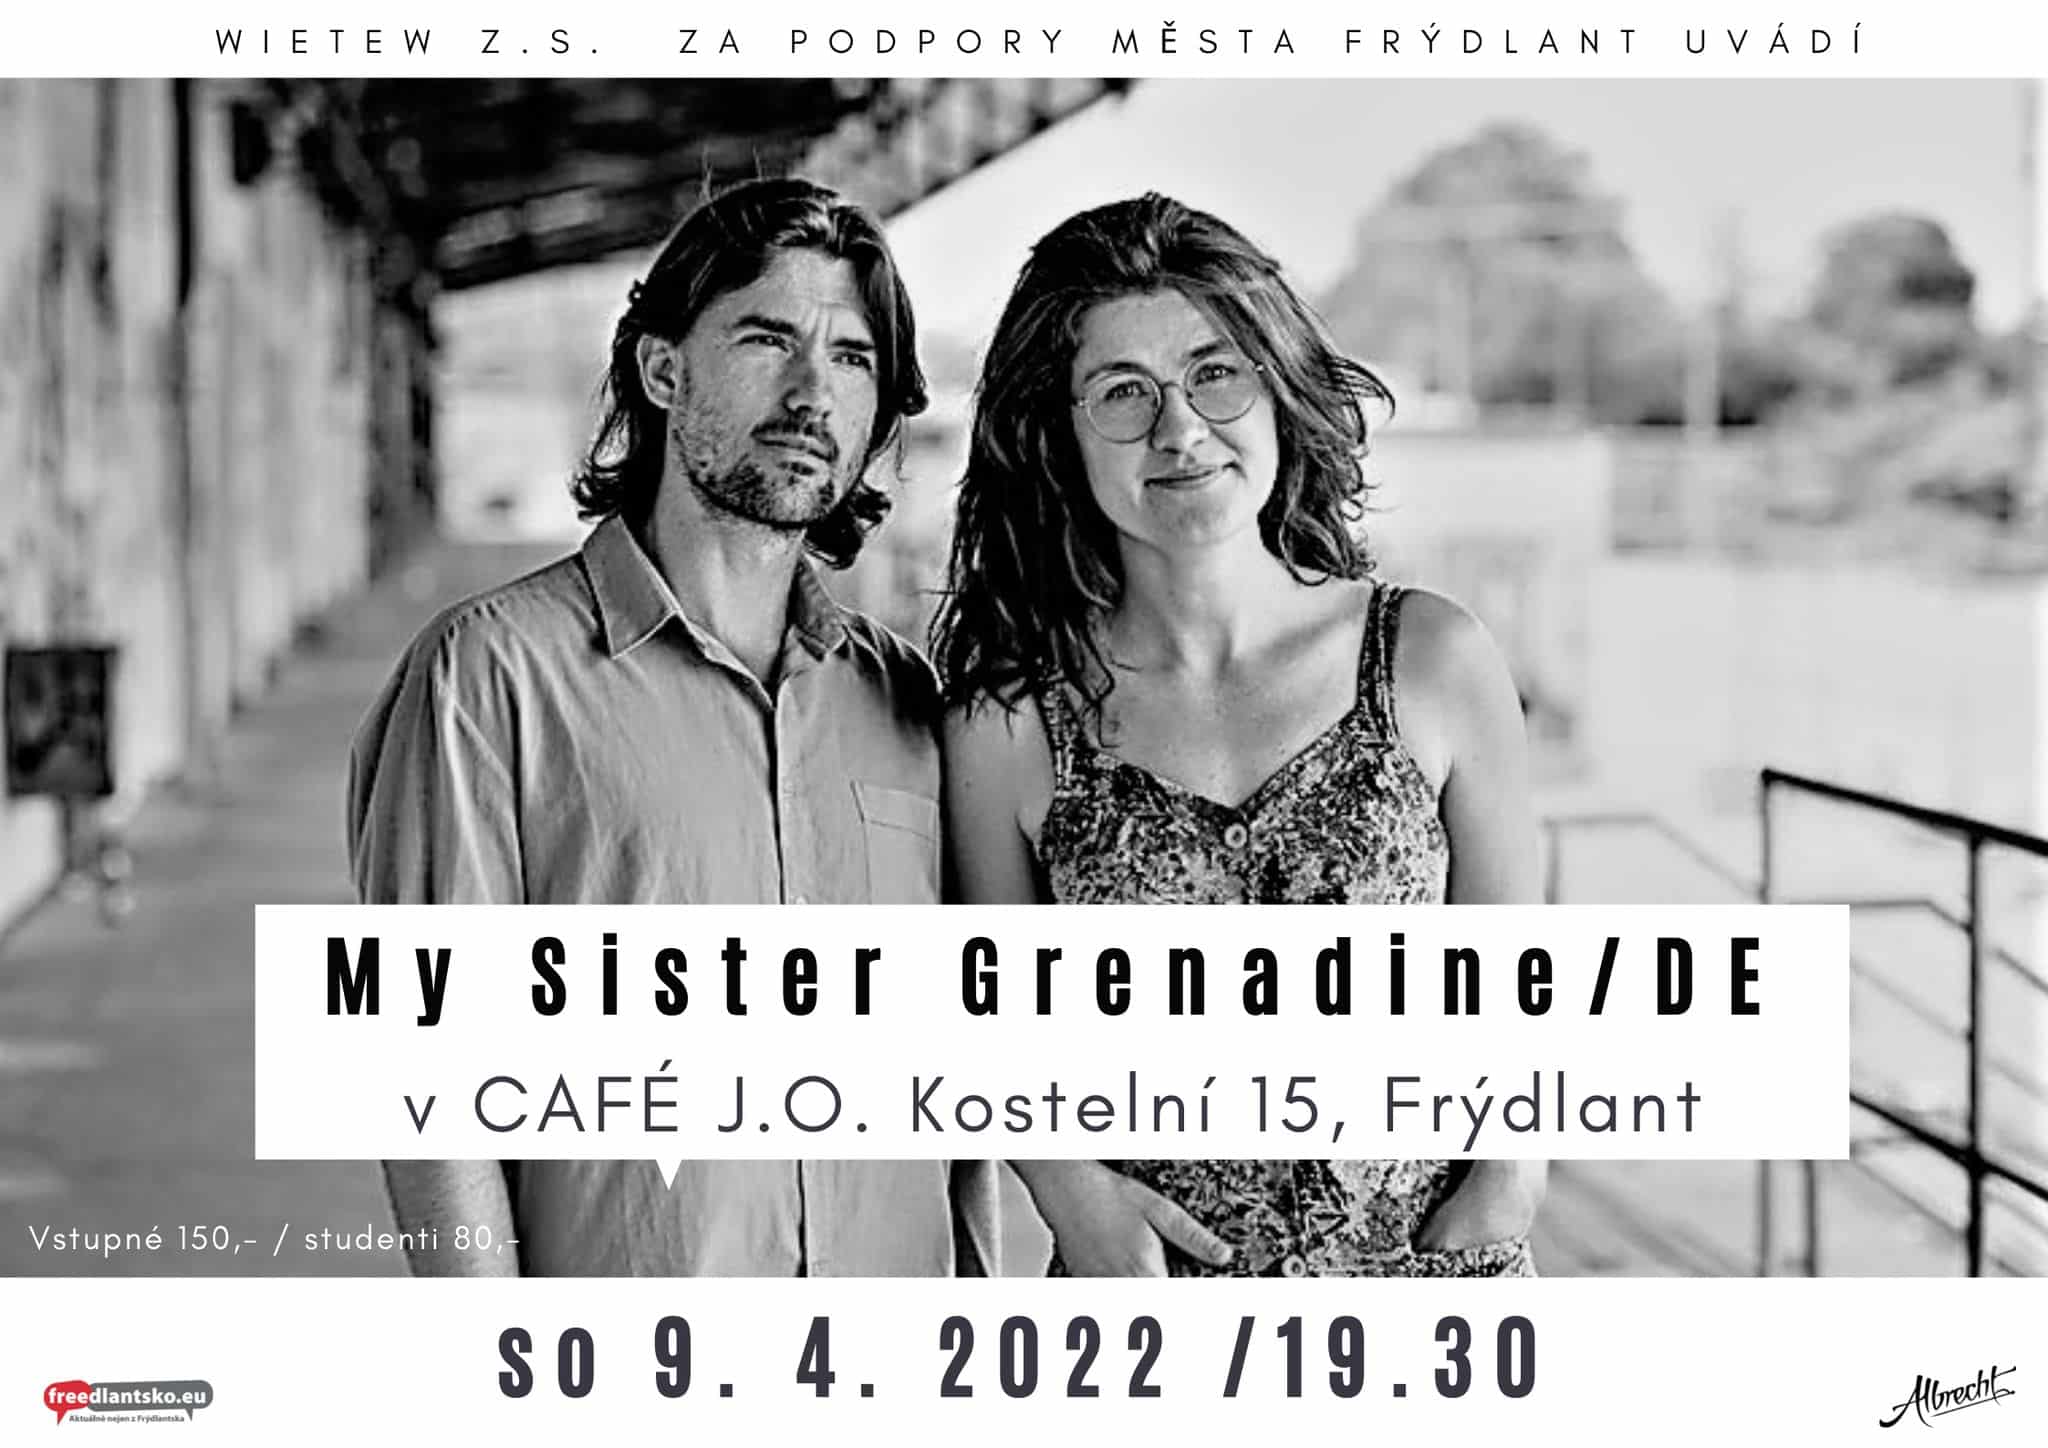 296 koncert my sister grenadine cafe jazzova osvezovna duben 2022 frydlantsko